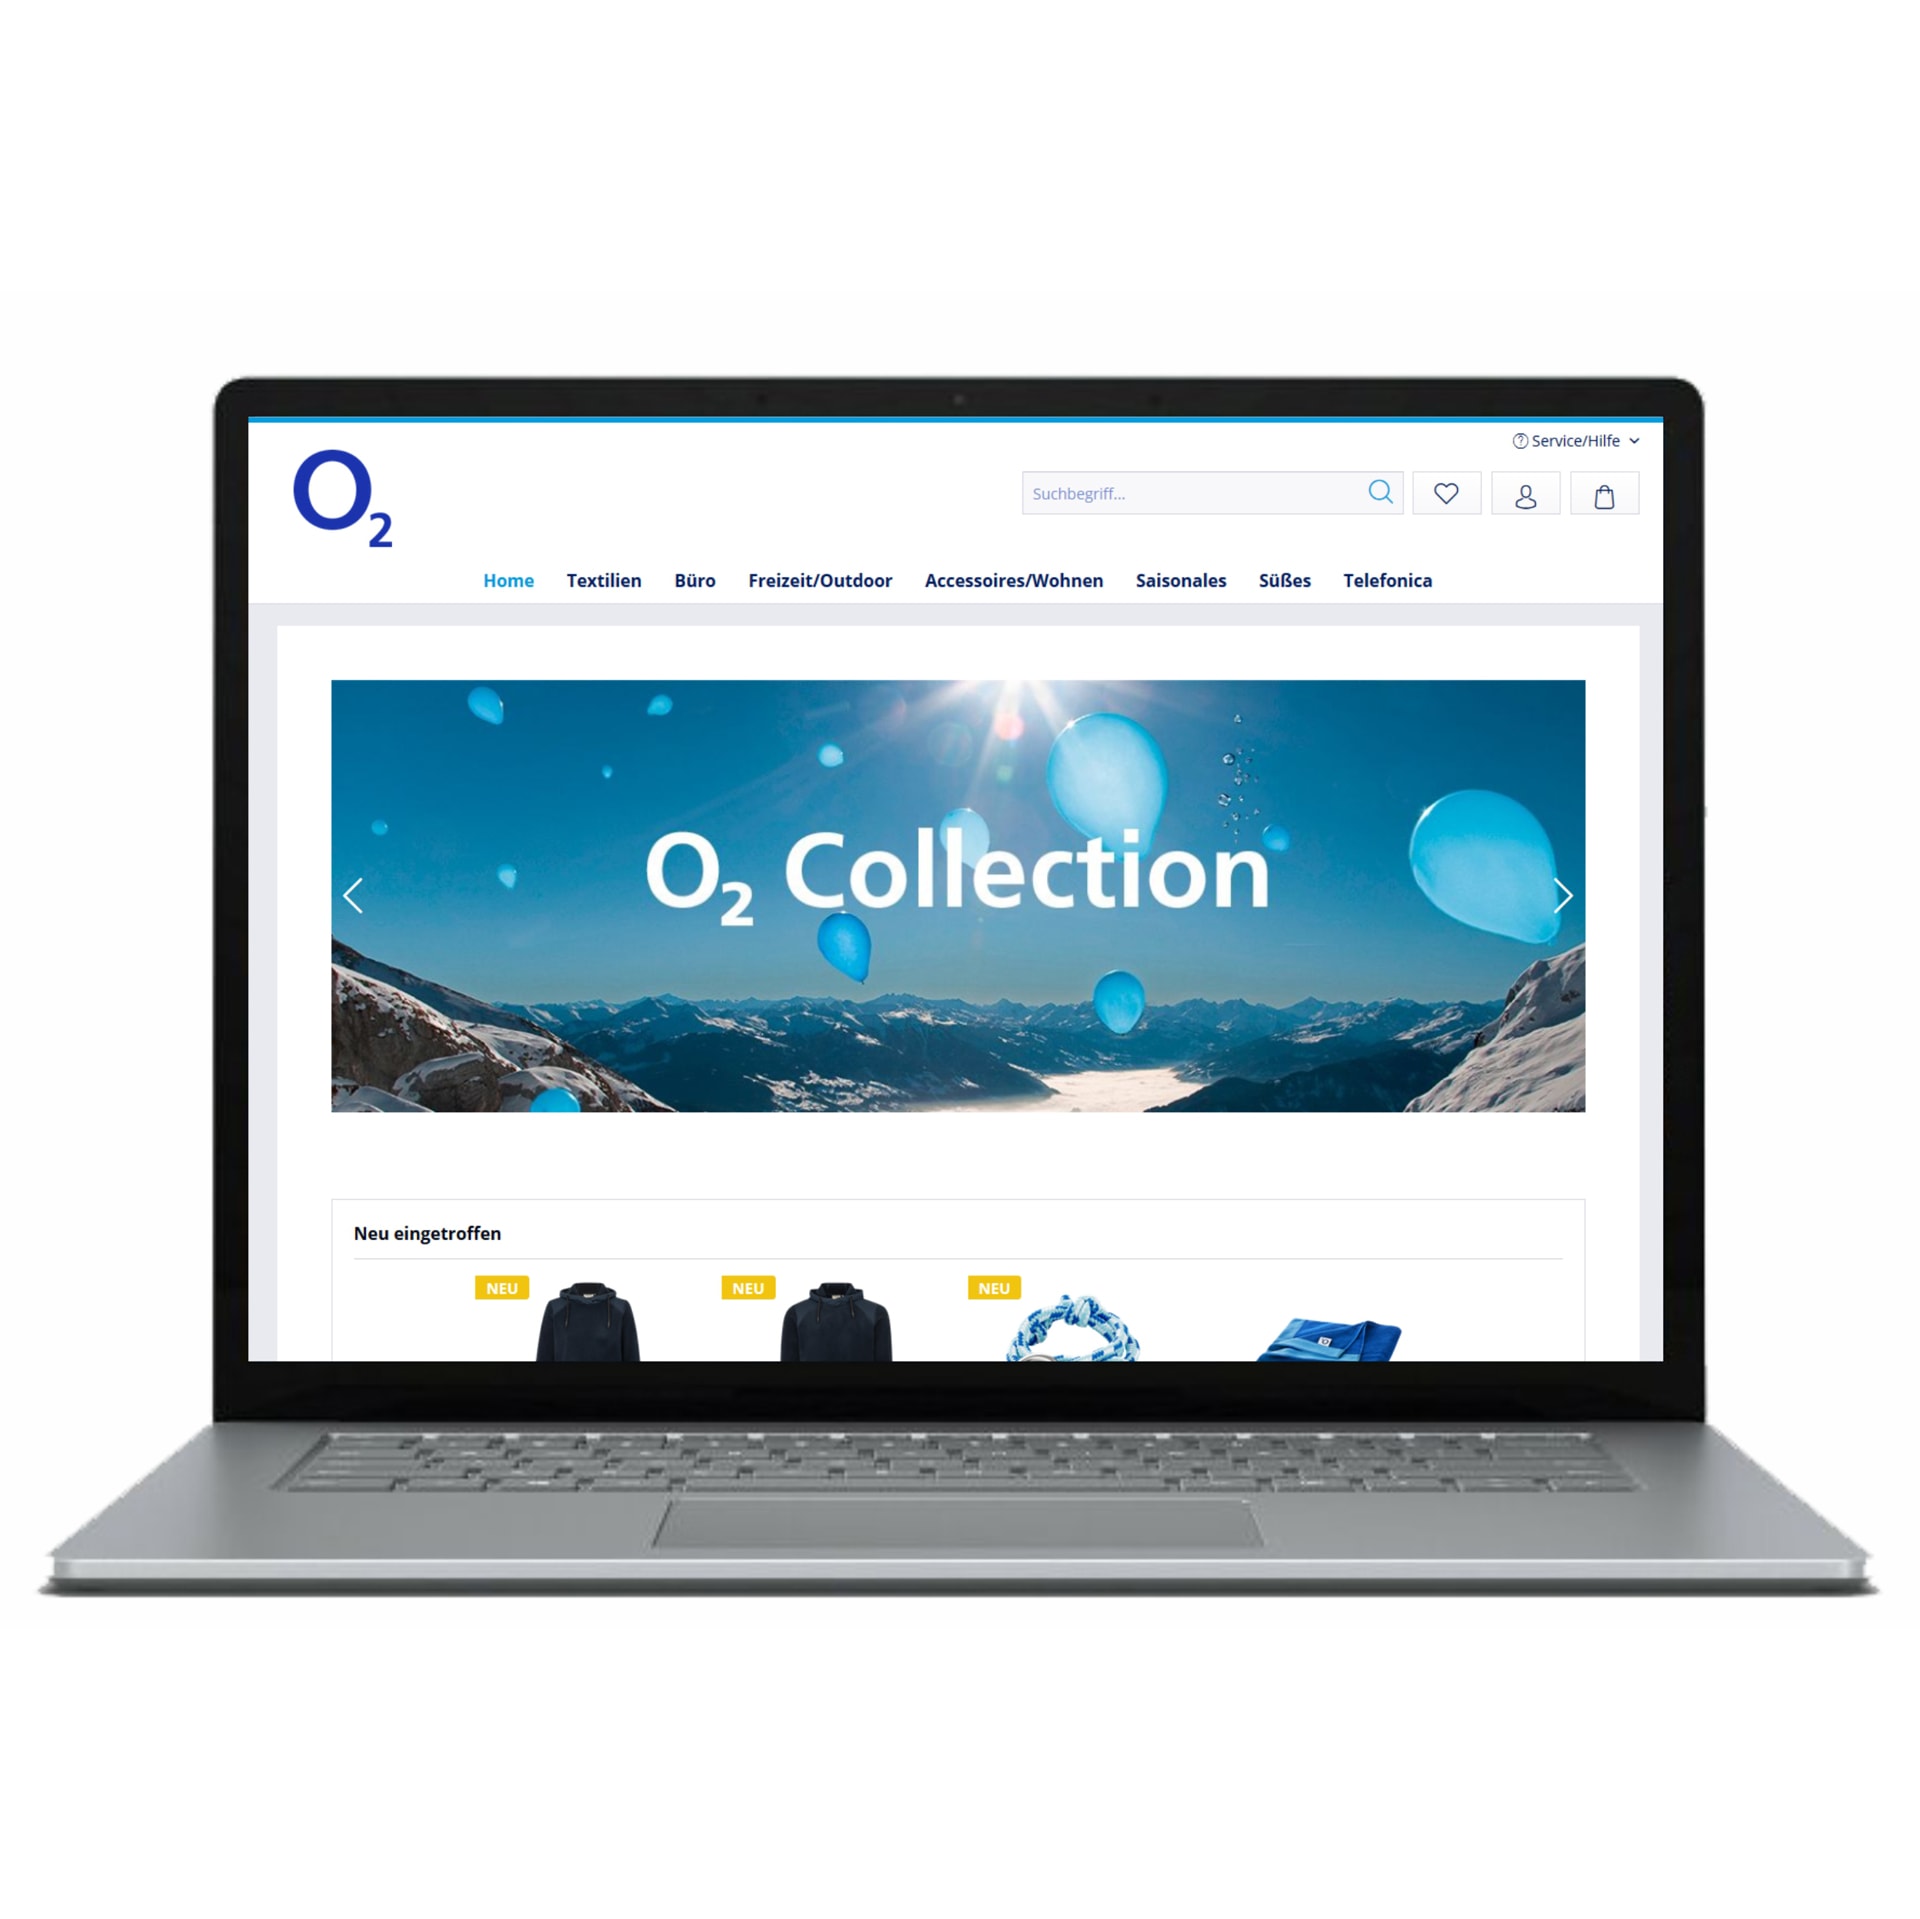 Laptop zeigt die Website des O2 Shops, ein von Holfelder gebauter Online-Shop